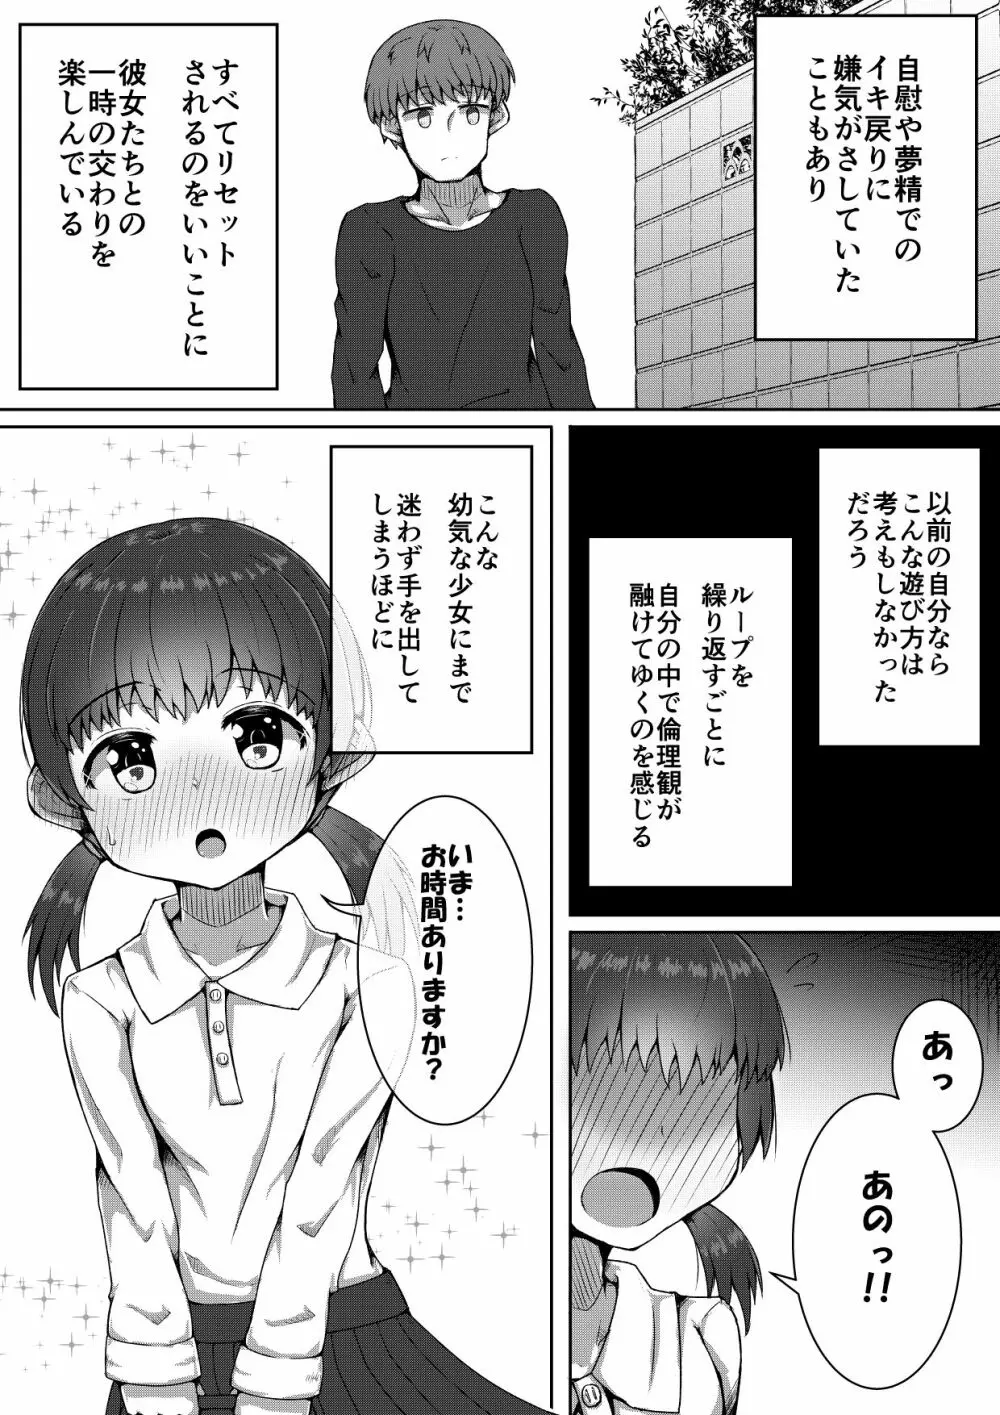 ふぉー・ふーむ・ごっど・わーくす - page12